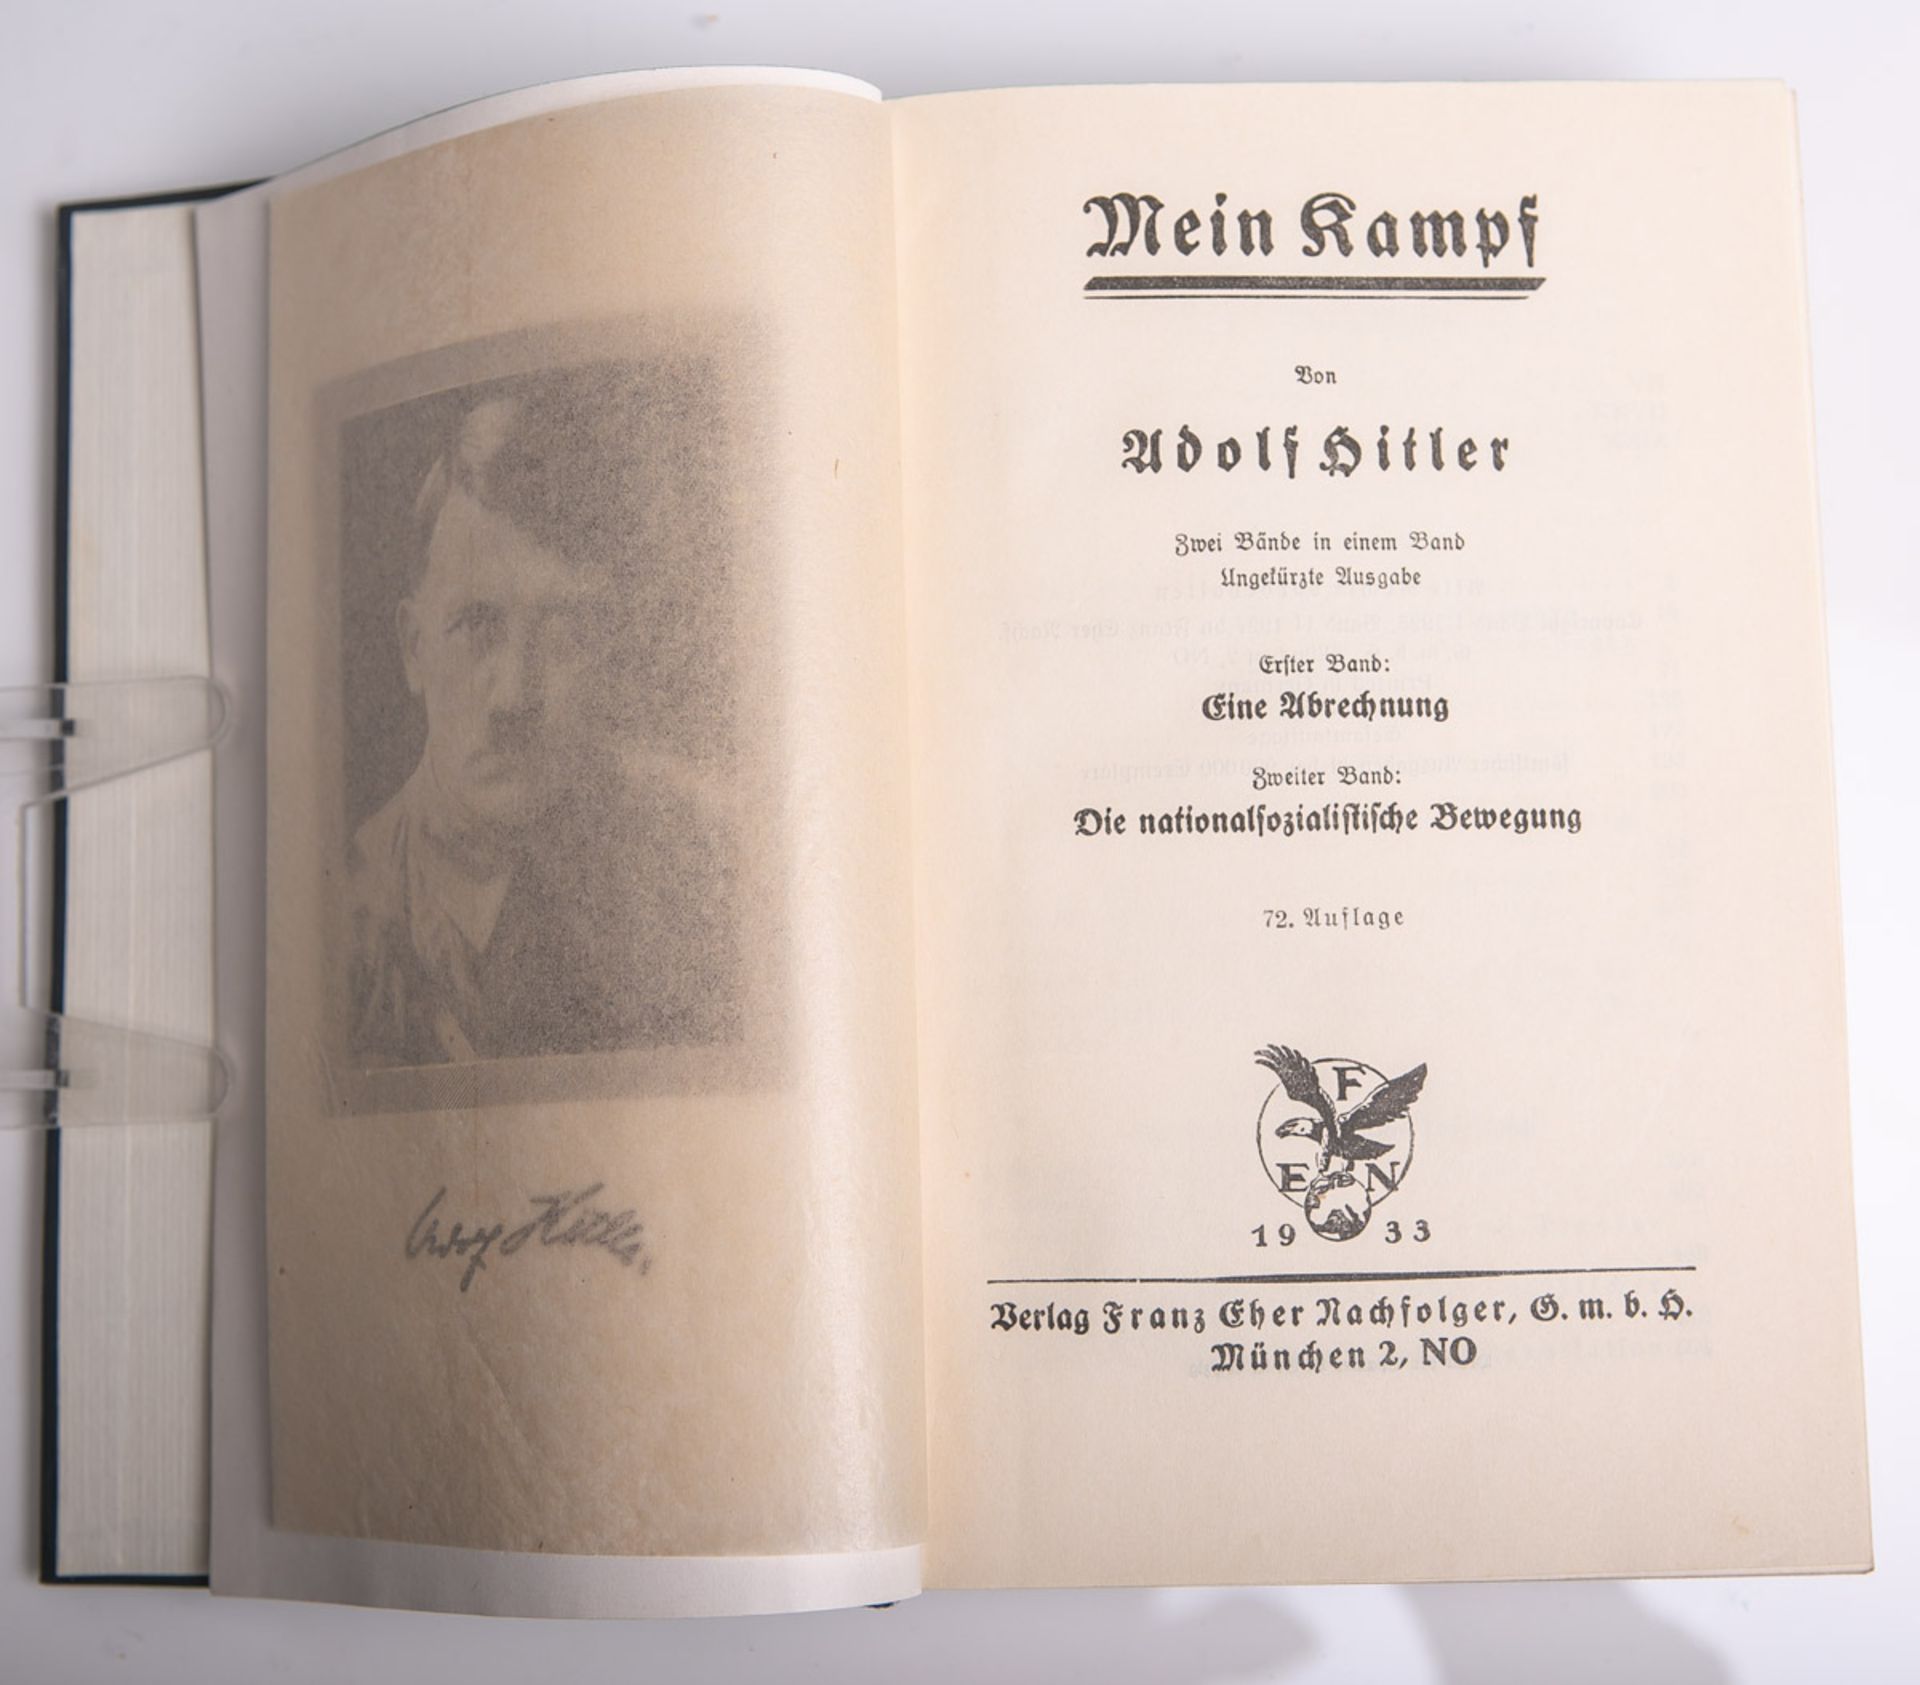 Hitler, Adolf, "Mein Kampf" (blaue Ausgabe von 1933), 72. Auflage, Verlag Franz Eher